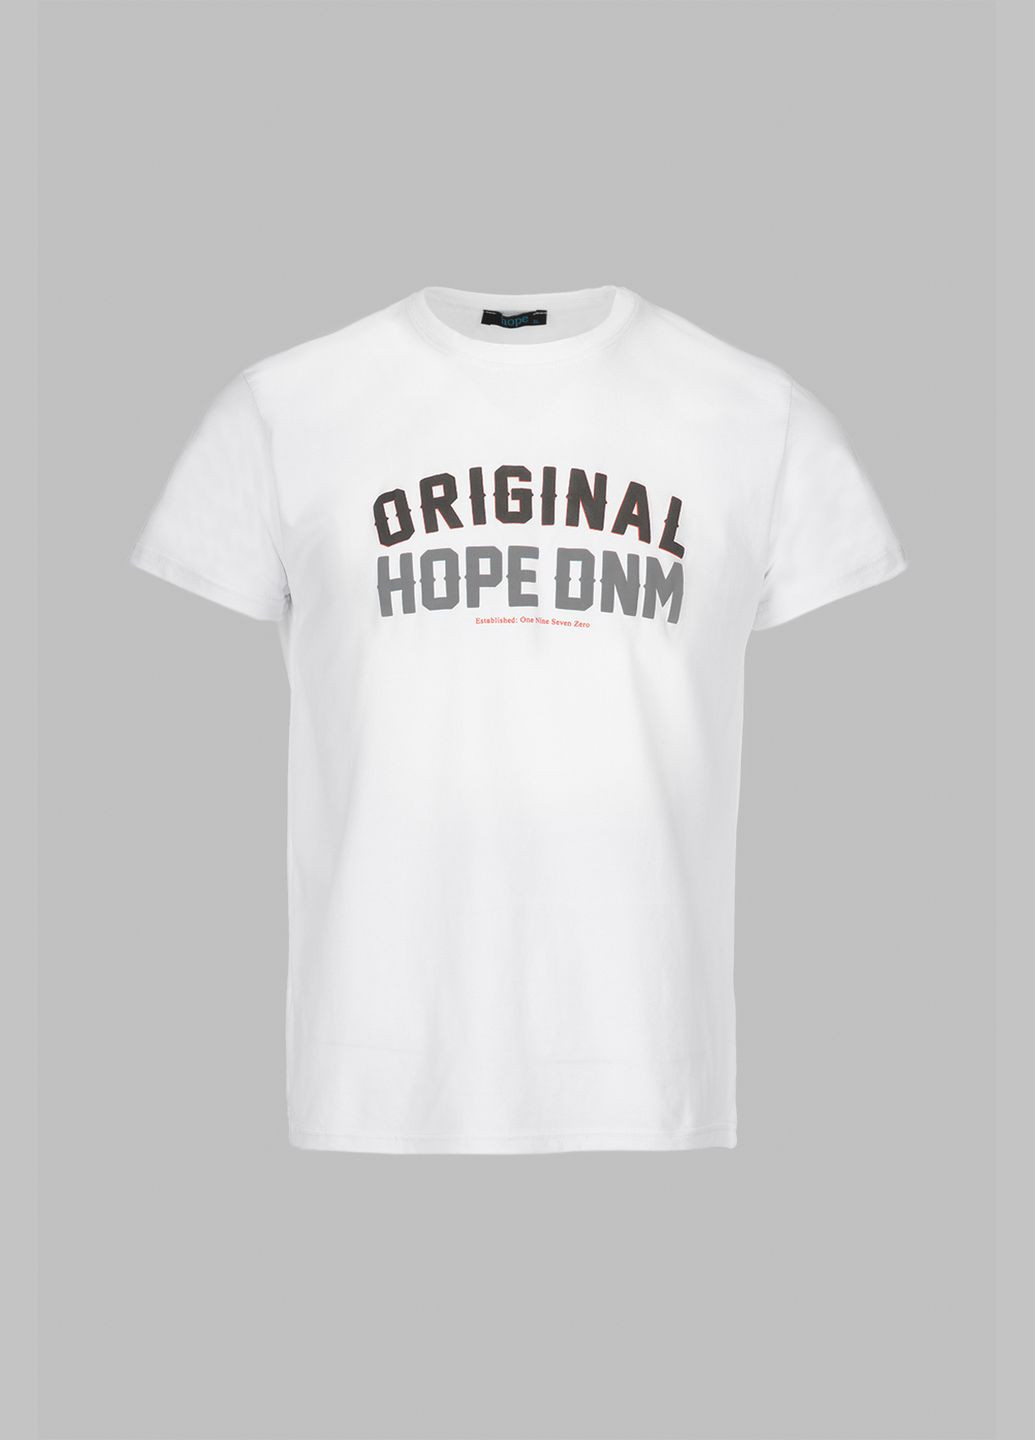 Біла футболка Hope